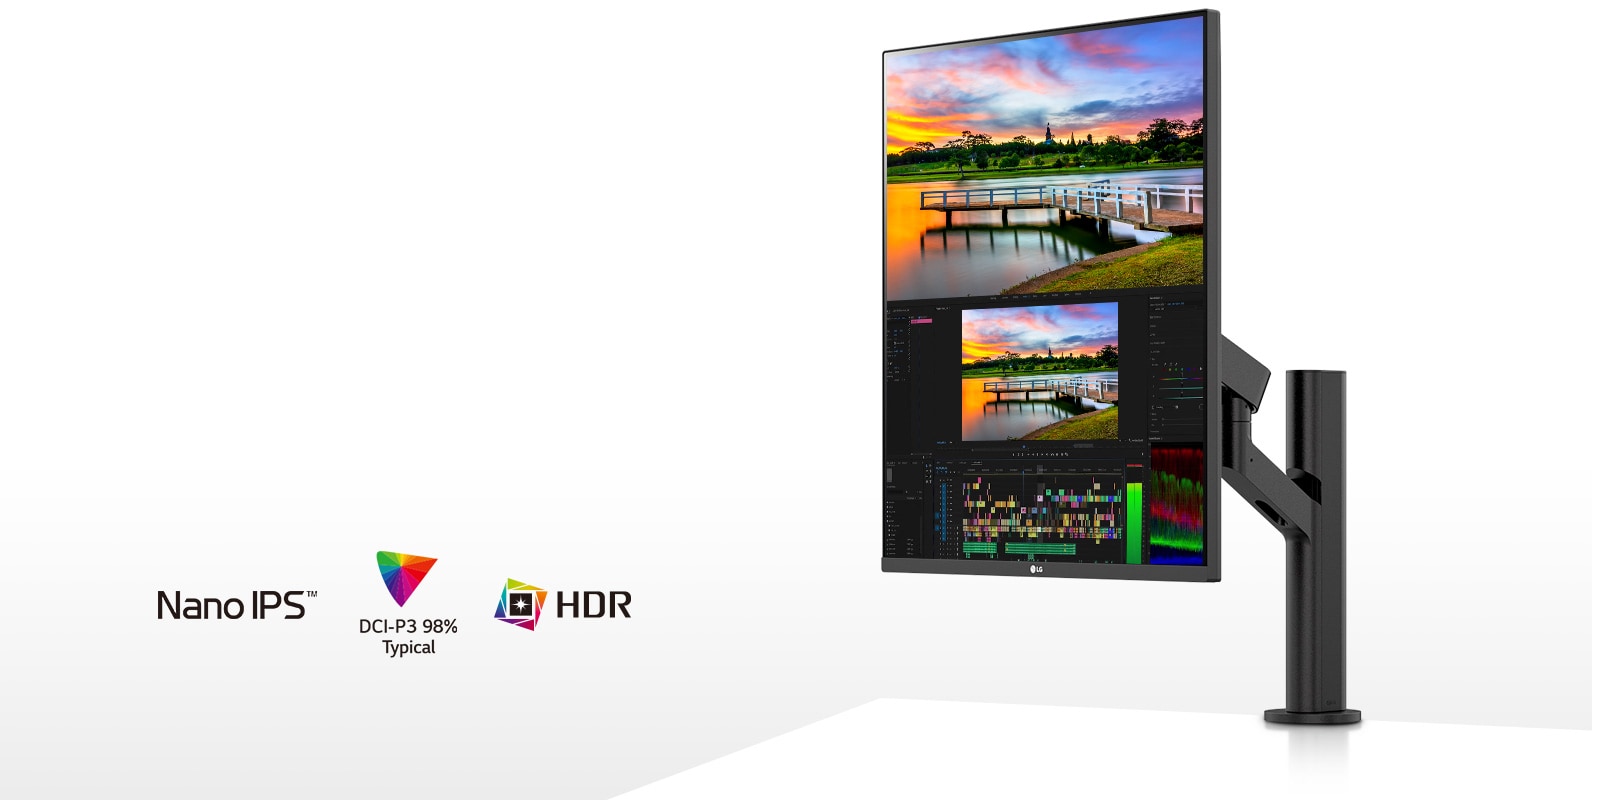 La pantalla Nano IPS admite un amplio espectro de colores, el 98 % de la gama de colores DCI-P3, y ofrece una reproducción de colores vibrantes compatibles con HDR10.